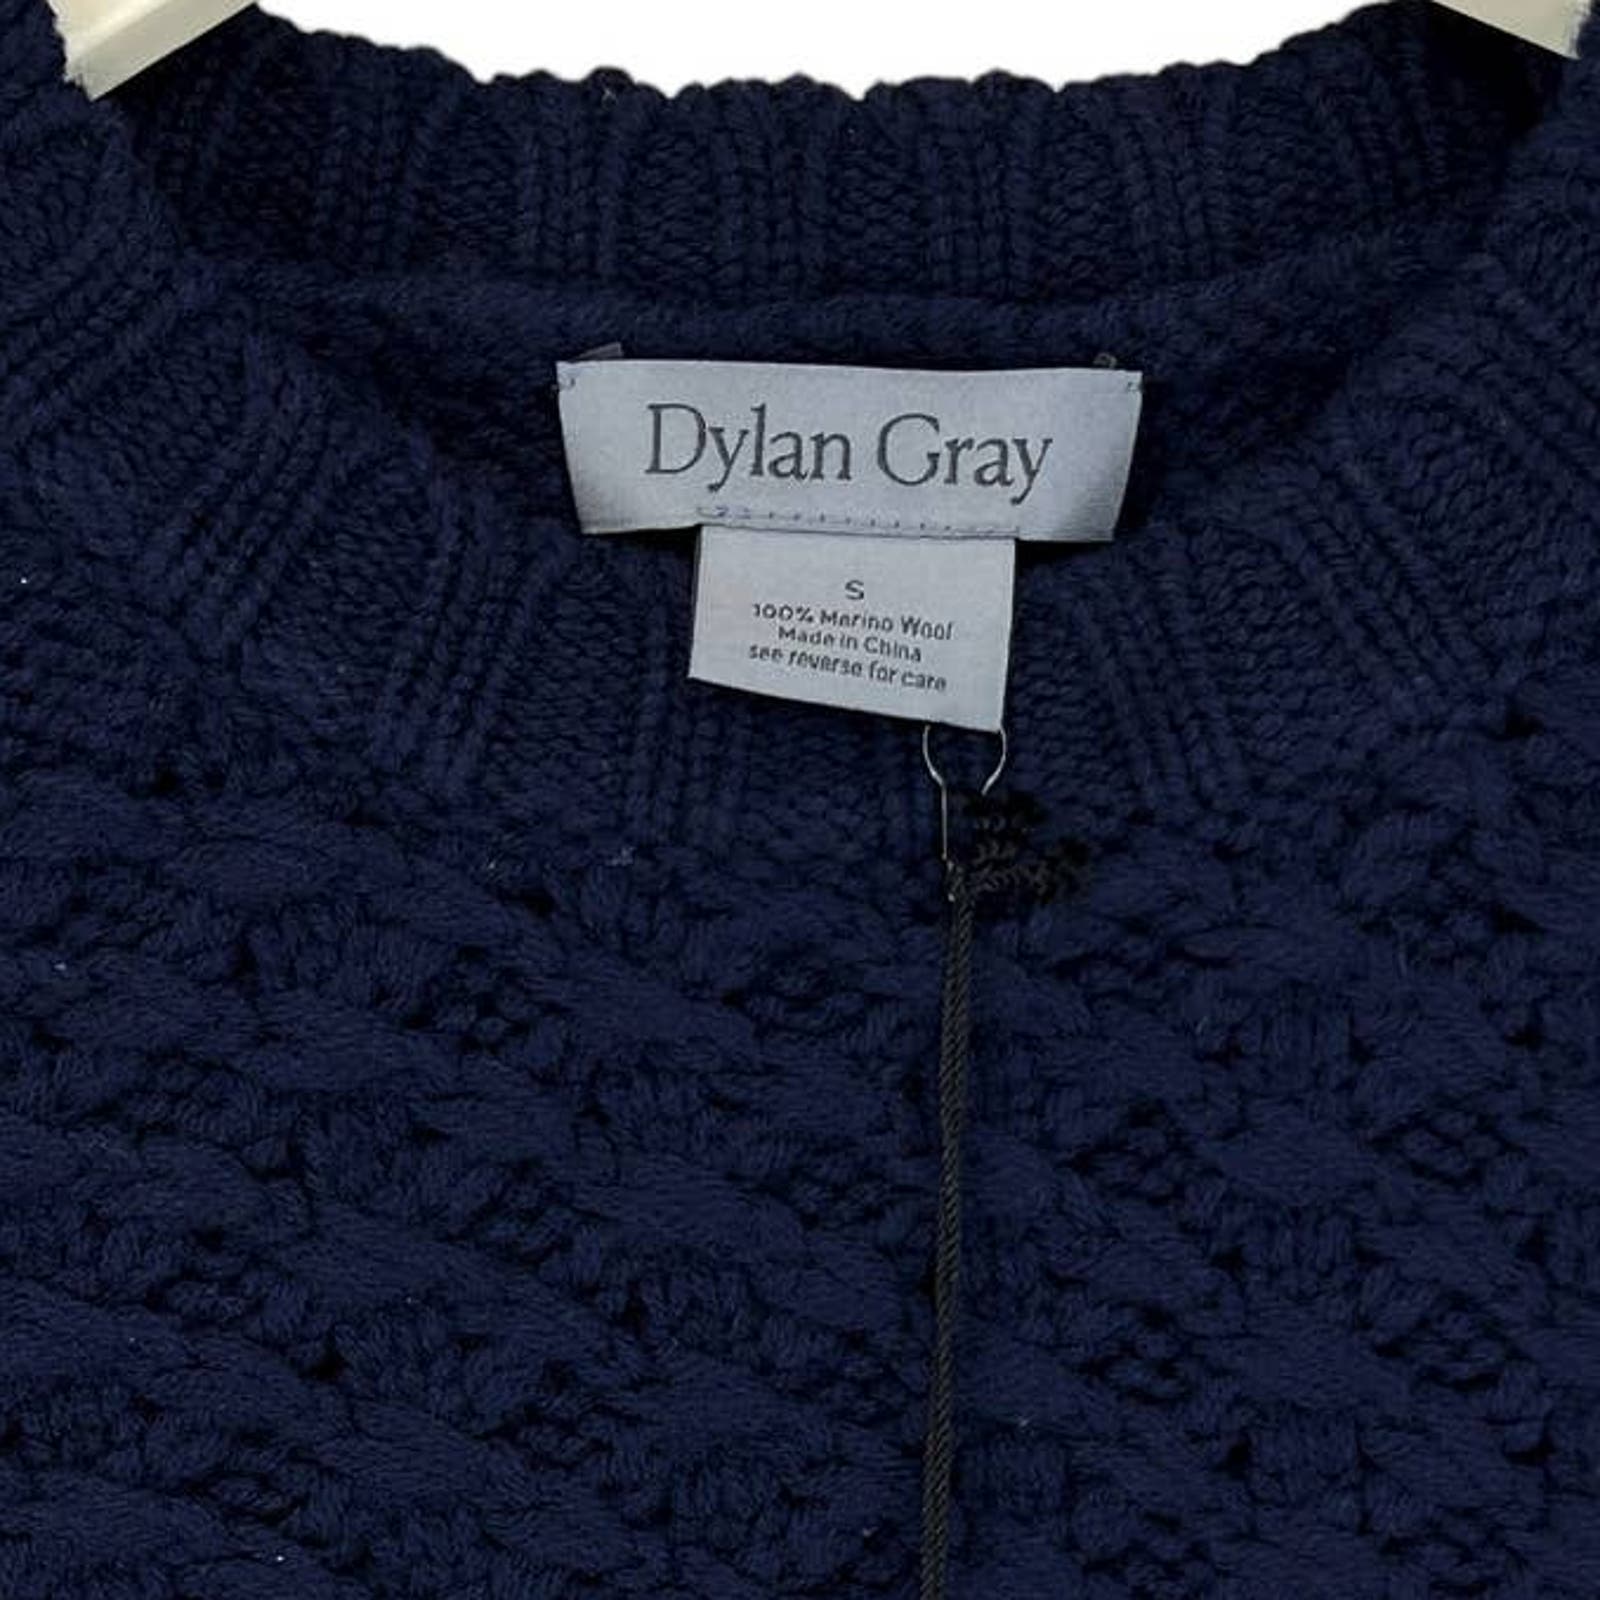 Dylan Gray Men Navy Merino Wool US XL Sweater Cabled Yoke